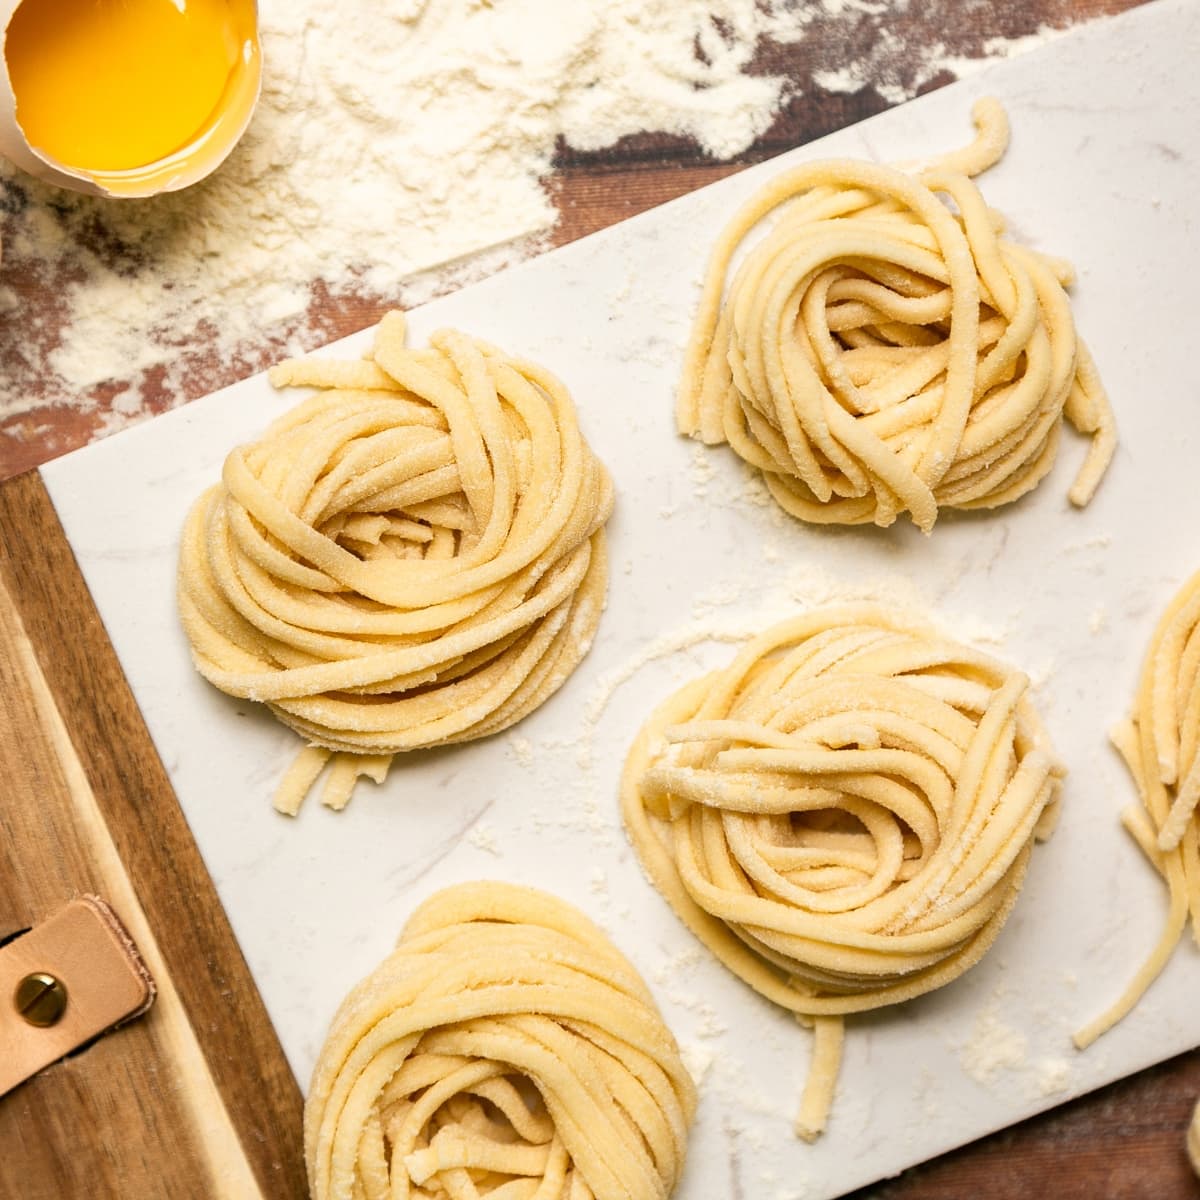 Homemade pasta dough recipe